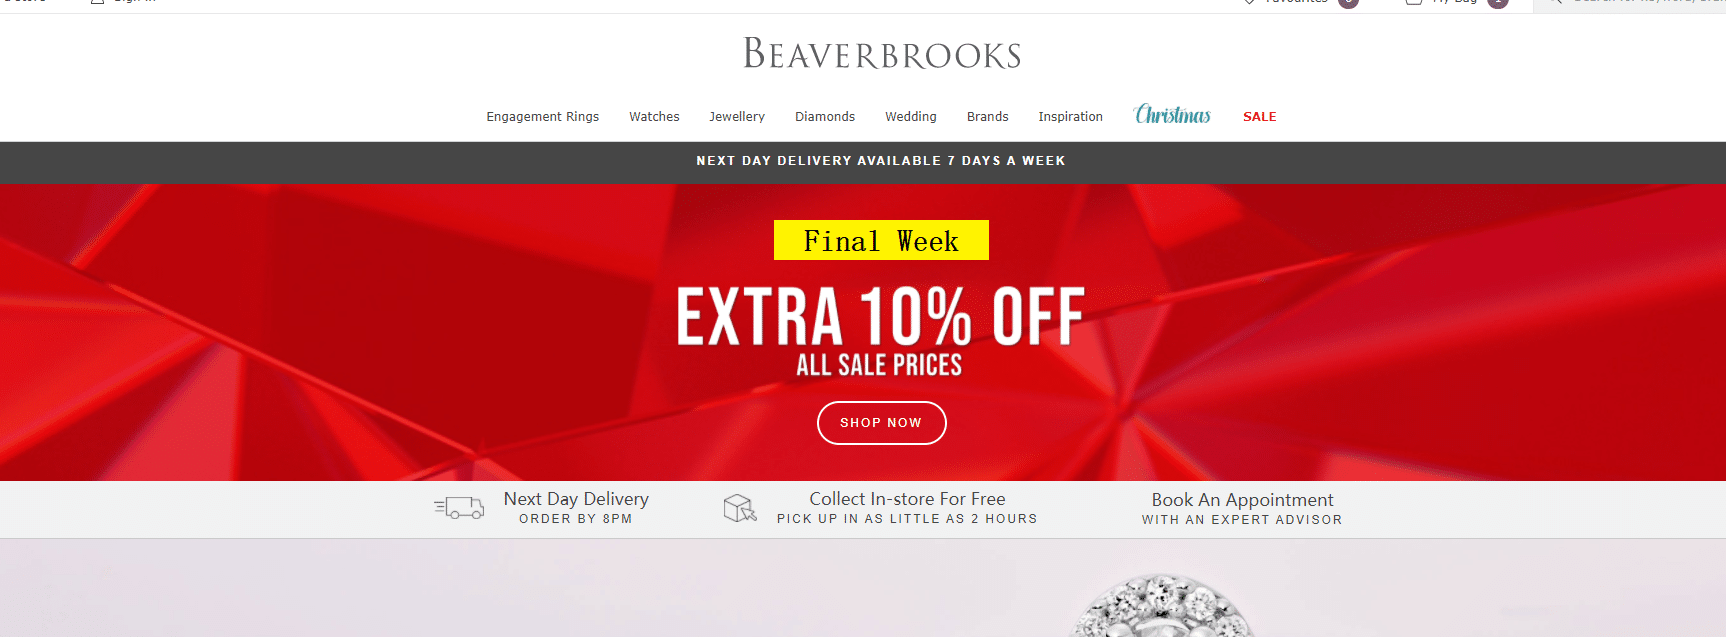 Beaverbrooks 10% off offer